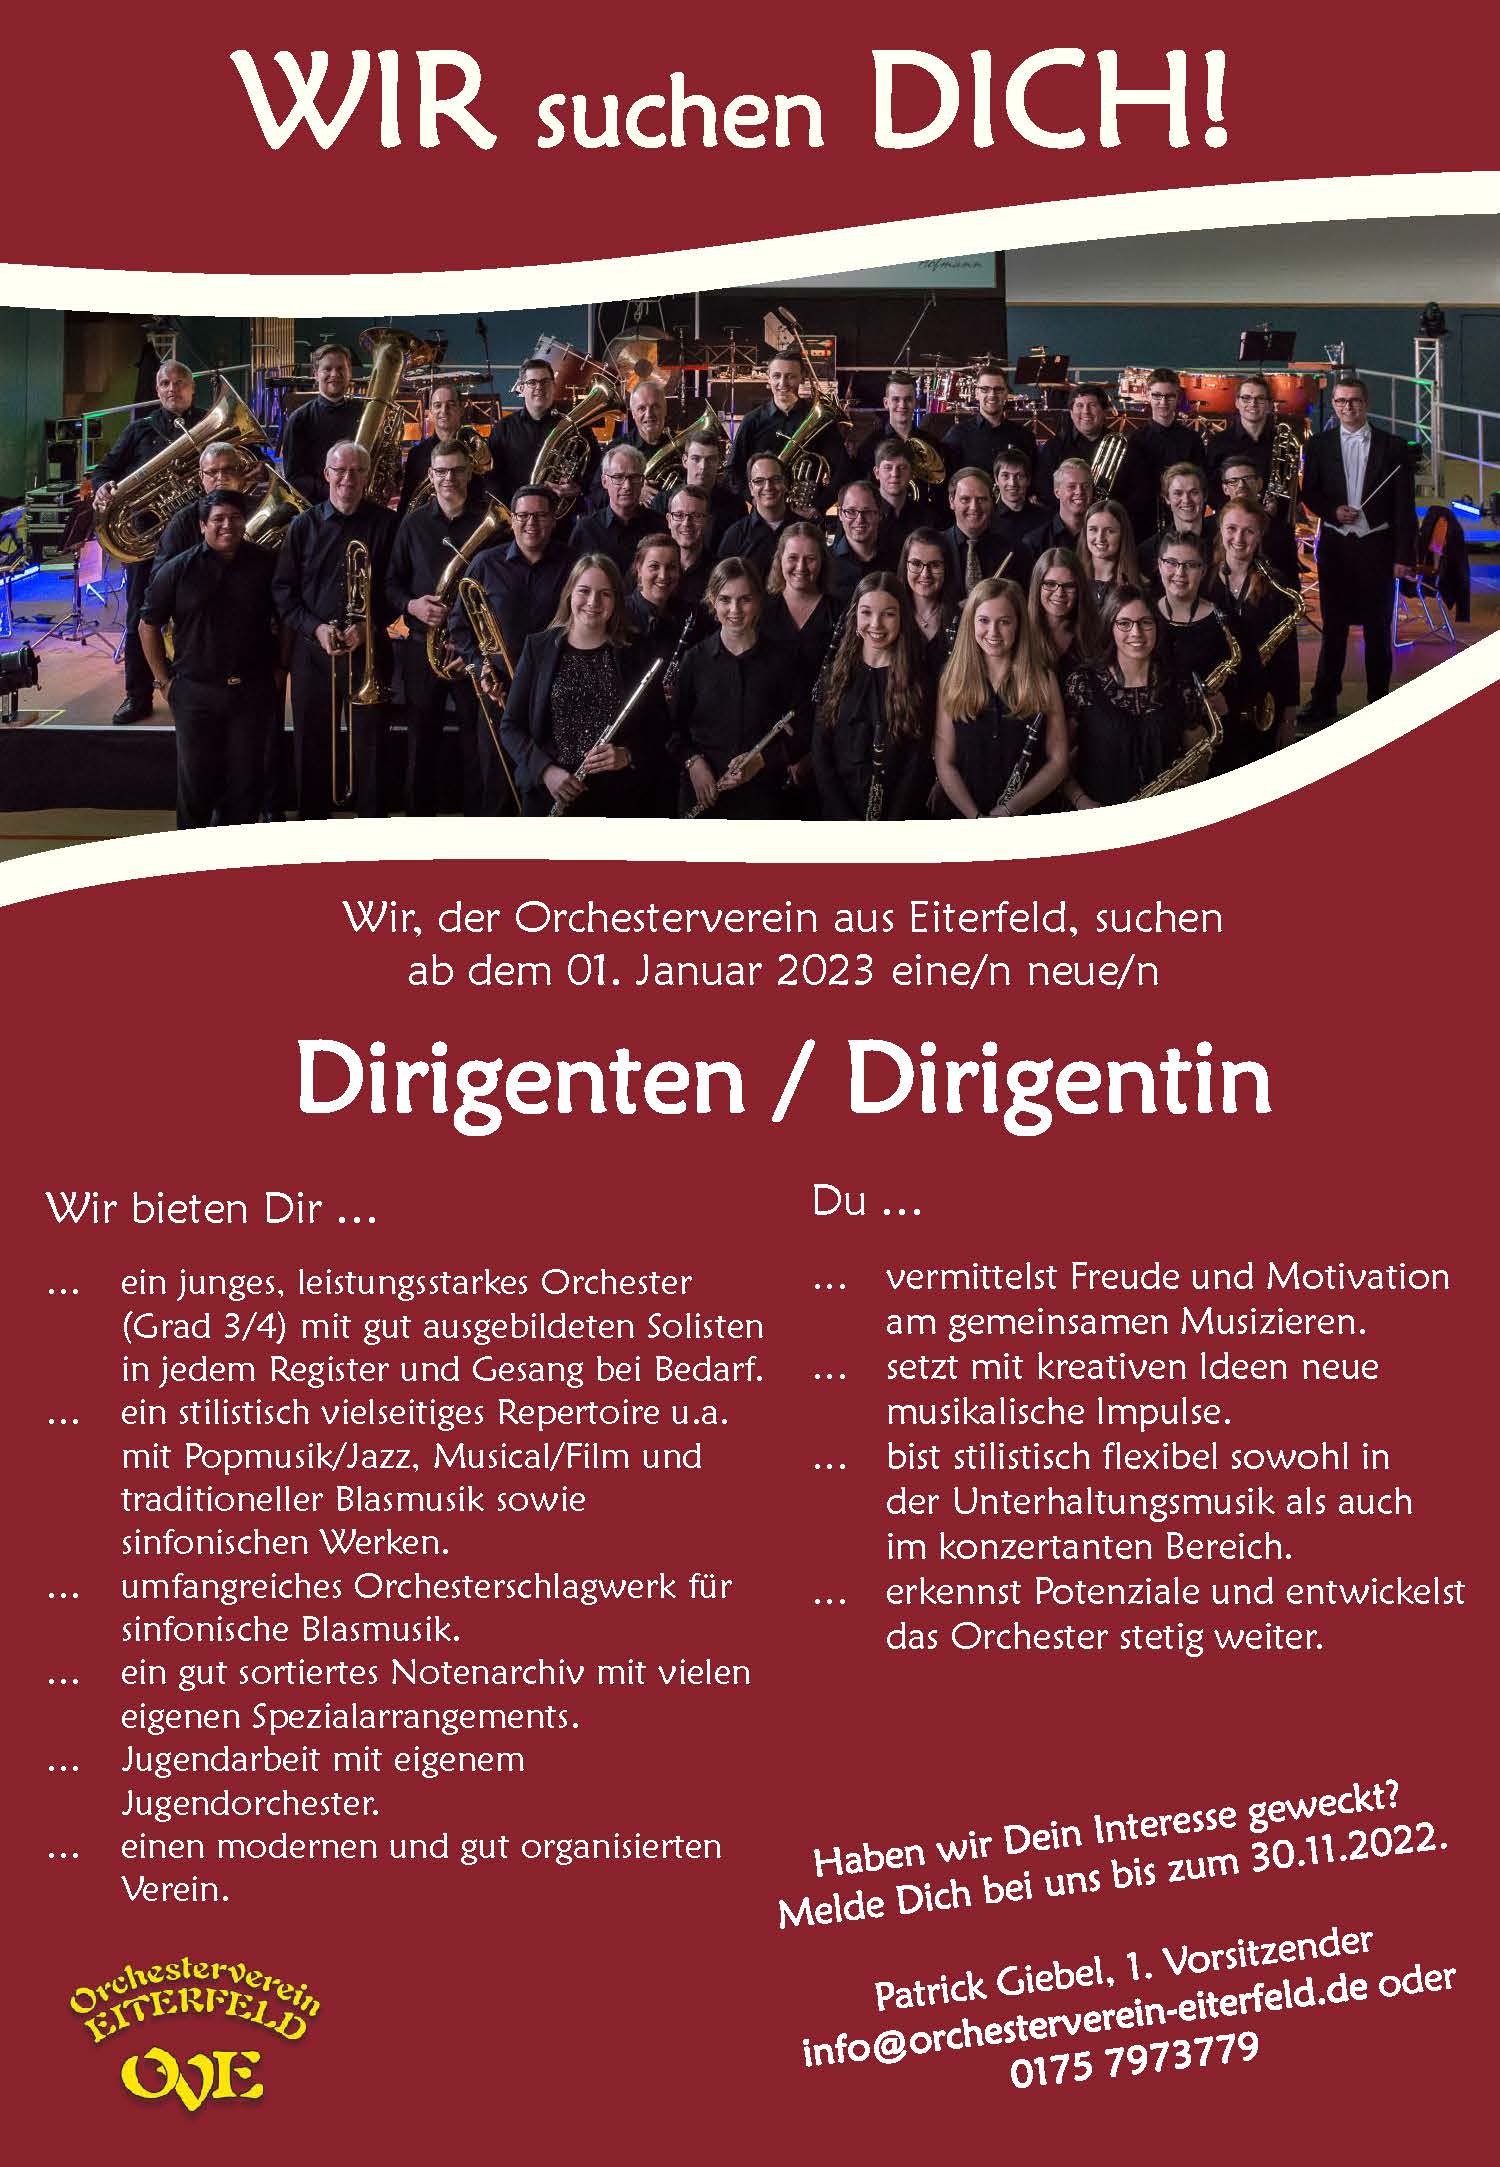 Dirigentenausschreibung Orchesterverein Eiterfeld